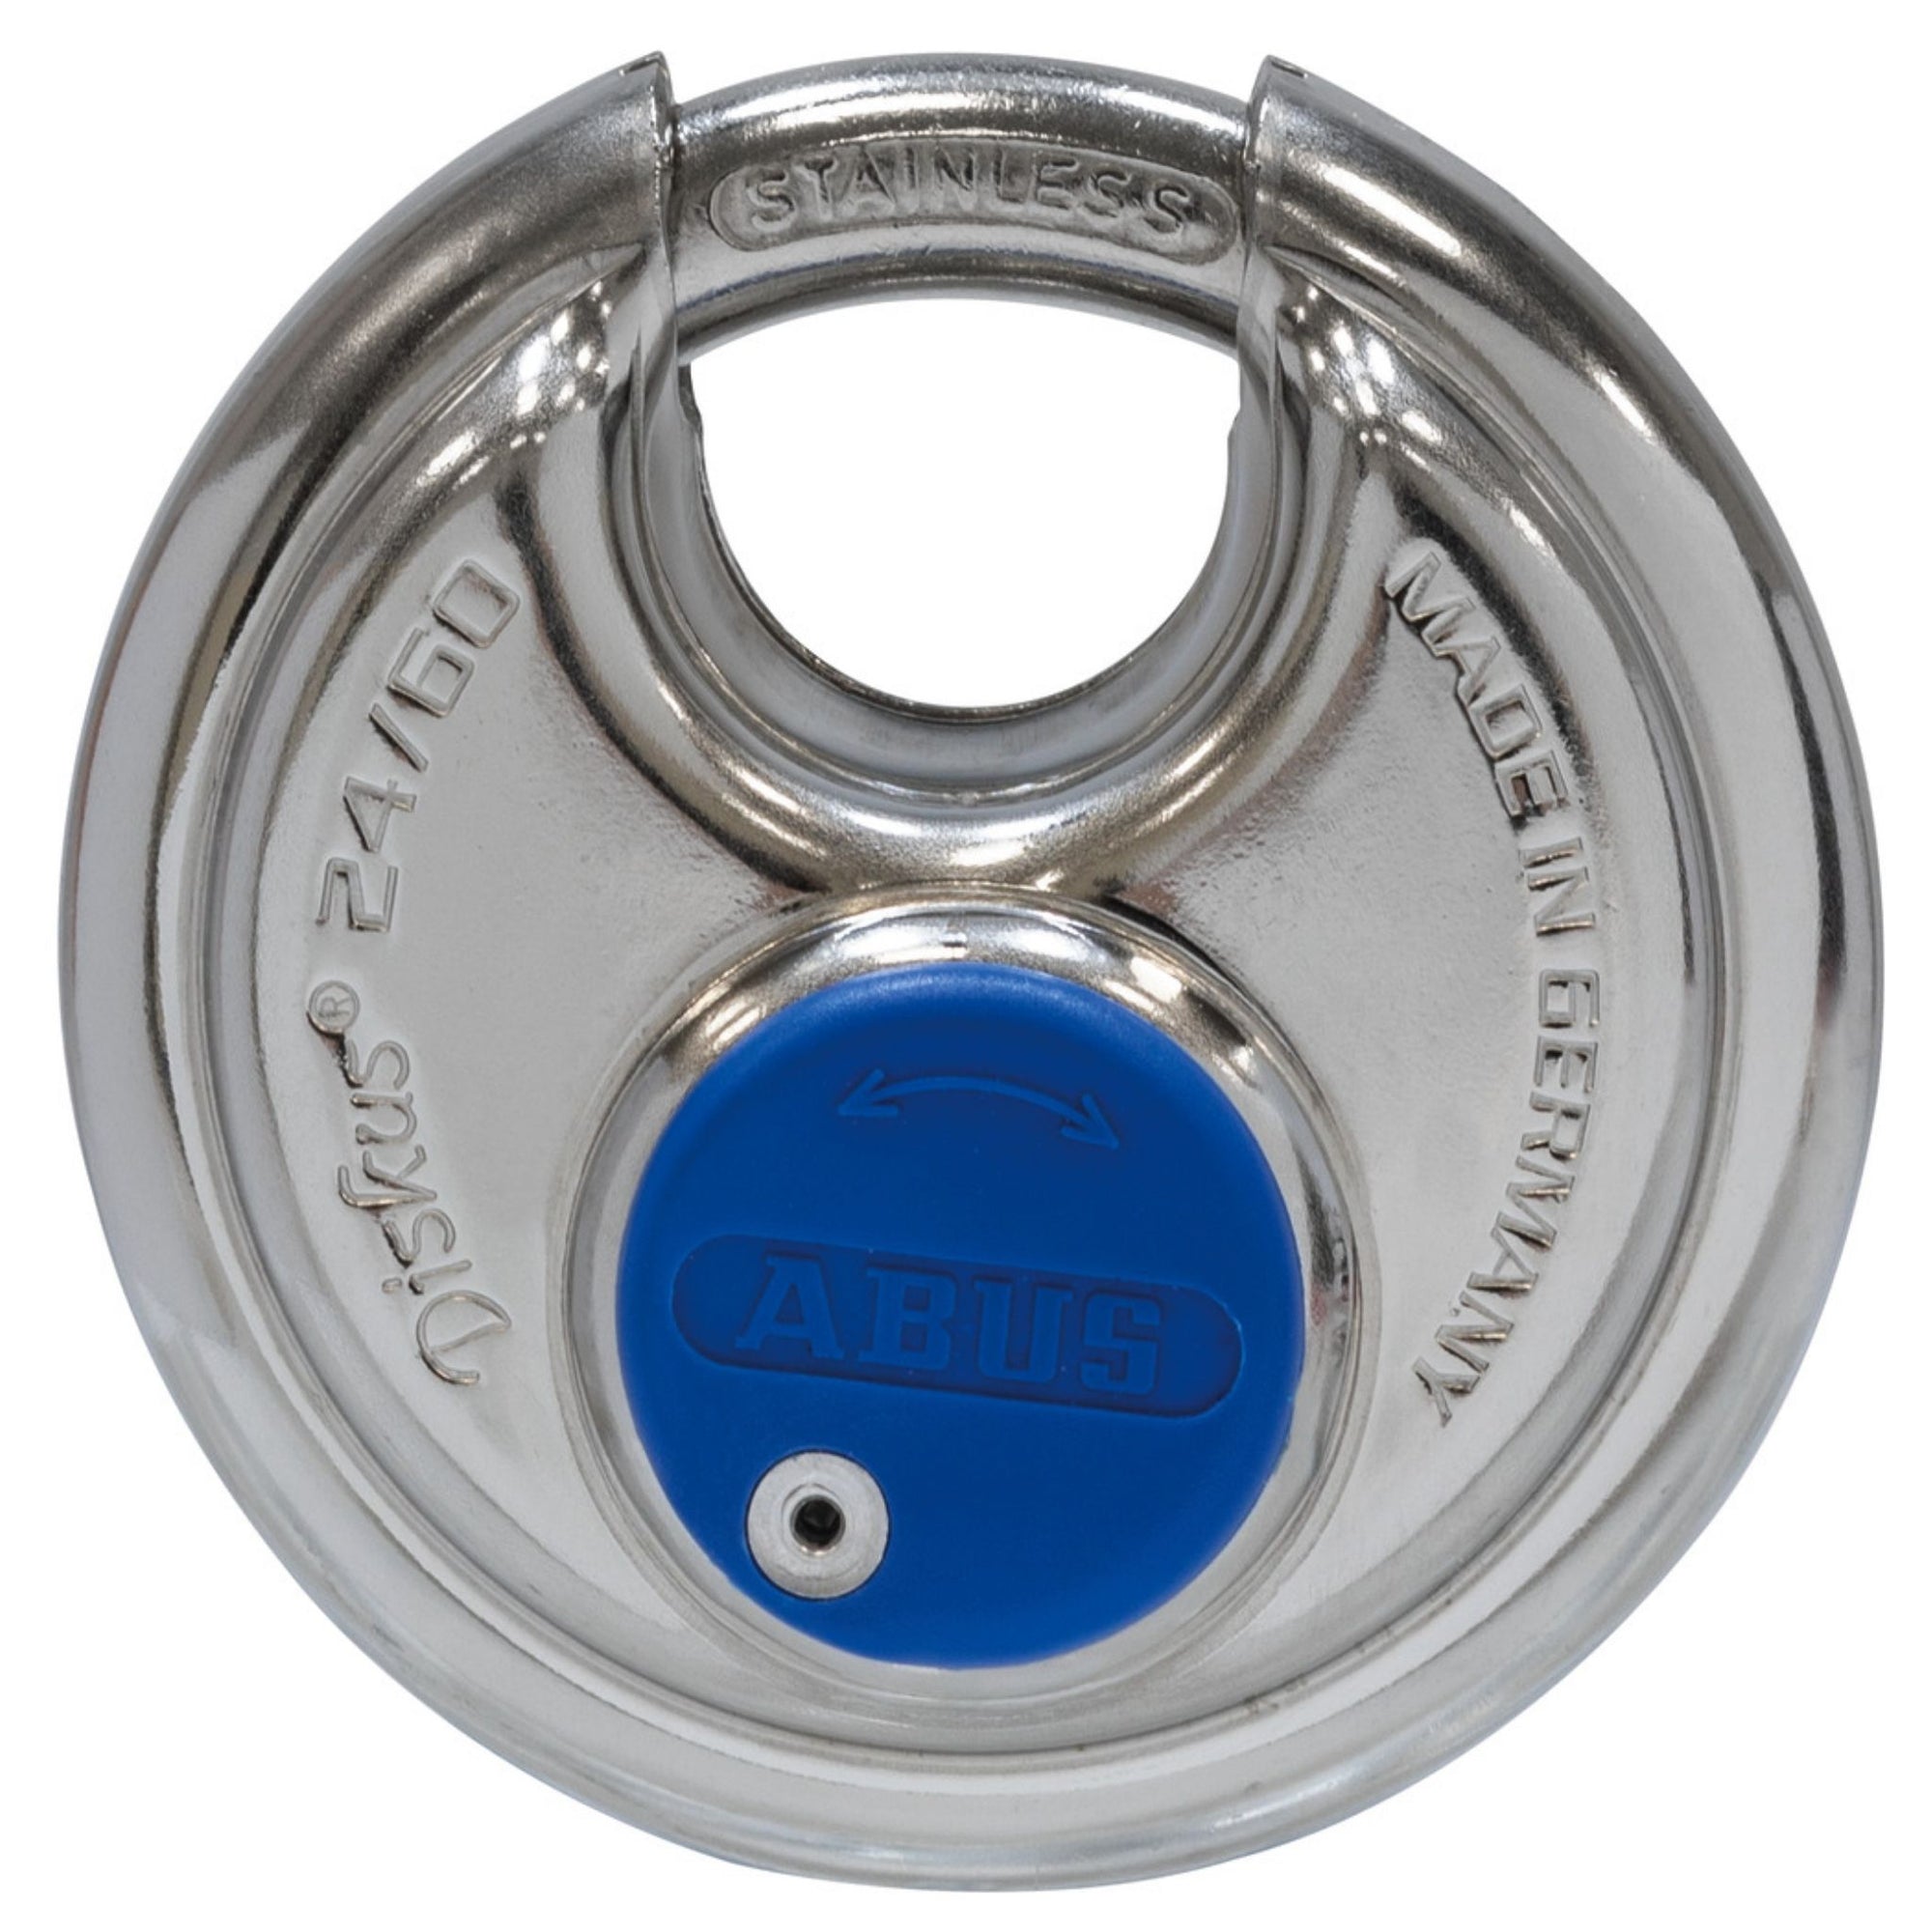 Abus 24IB/60 KA Diskus Lock Keyed Alike Weatherproof Disk Padlocks - The Lock Source